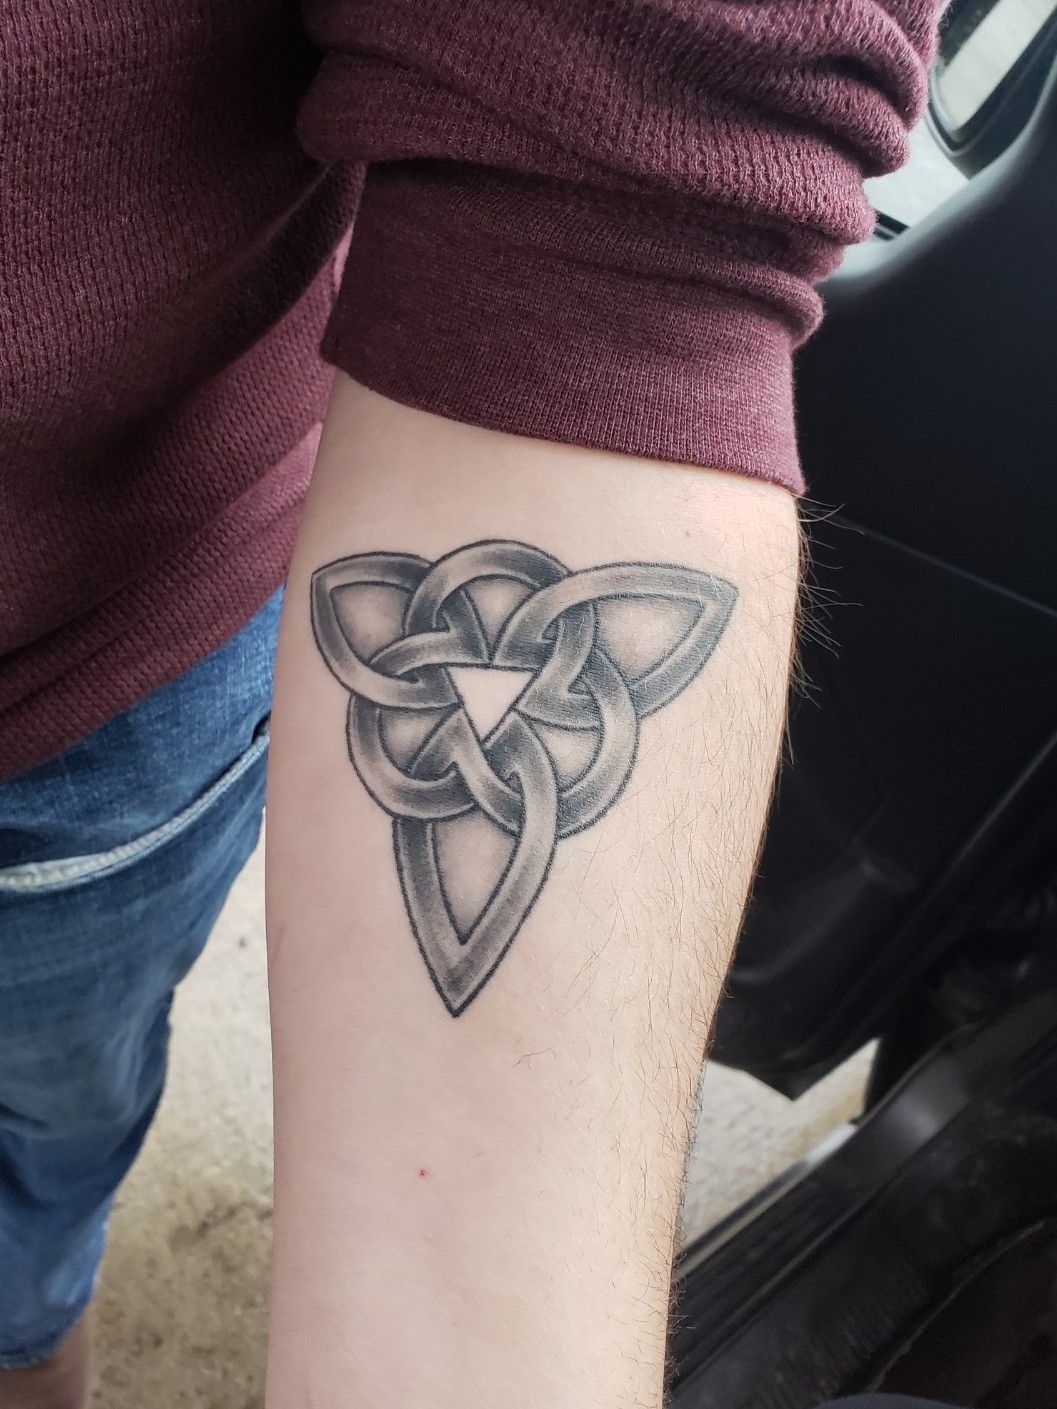 Celtic brotherhood tattoo